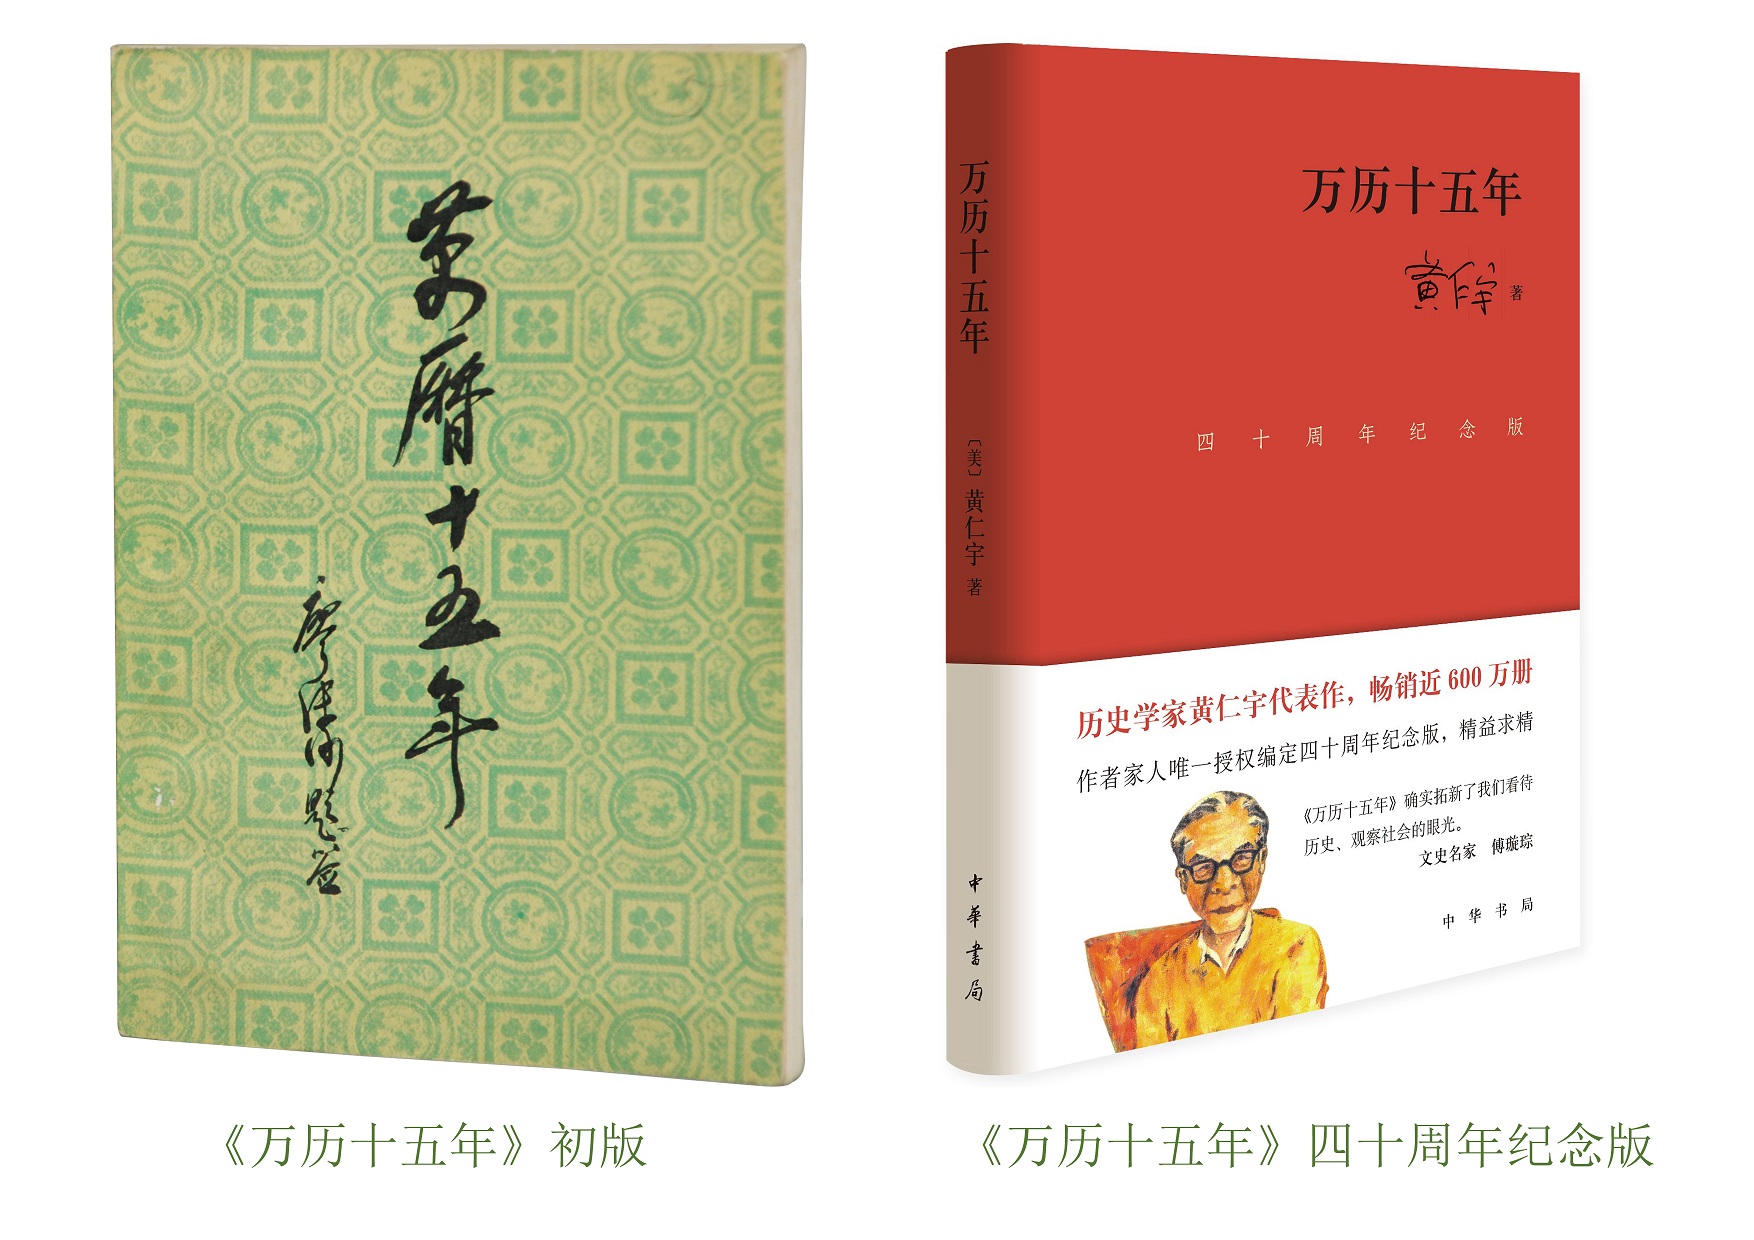 从110年前走来的中华书局，“阅尽千帆仍是少年”